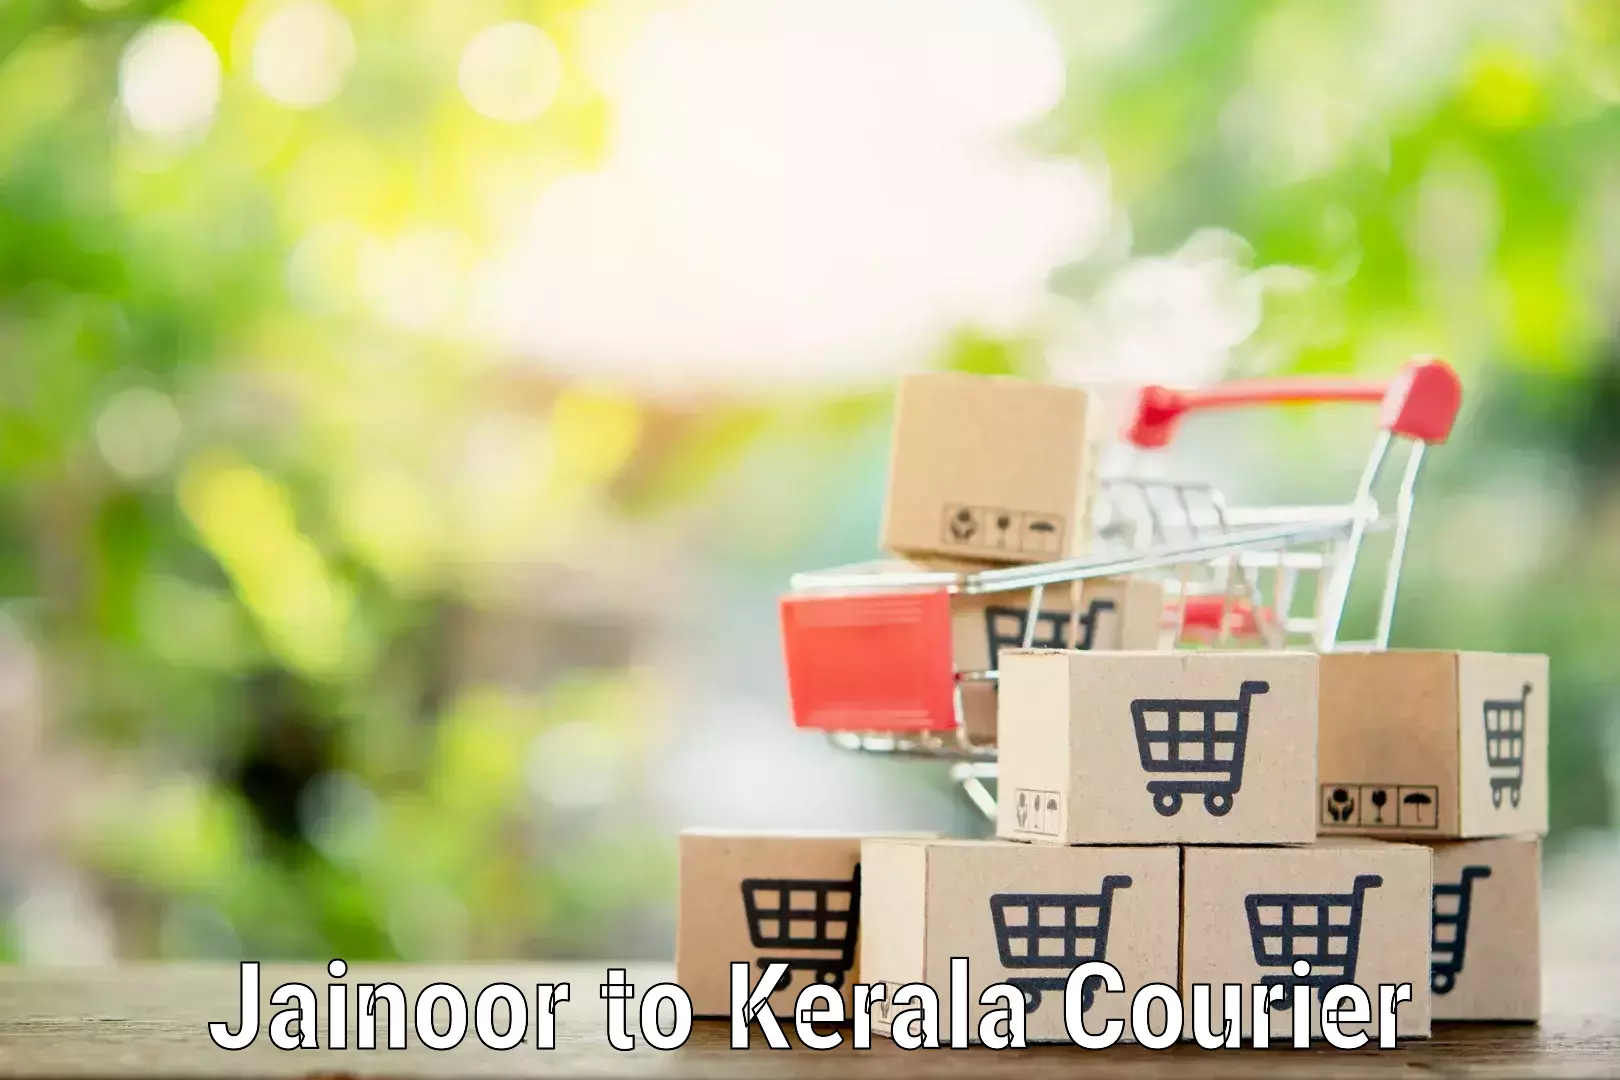 Home relocation experts Jainoor to Kollam